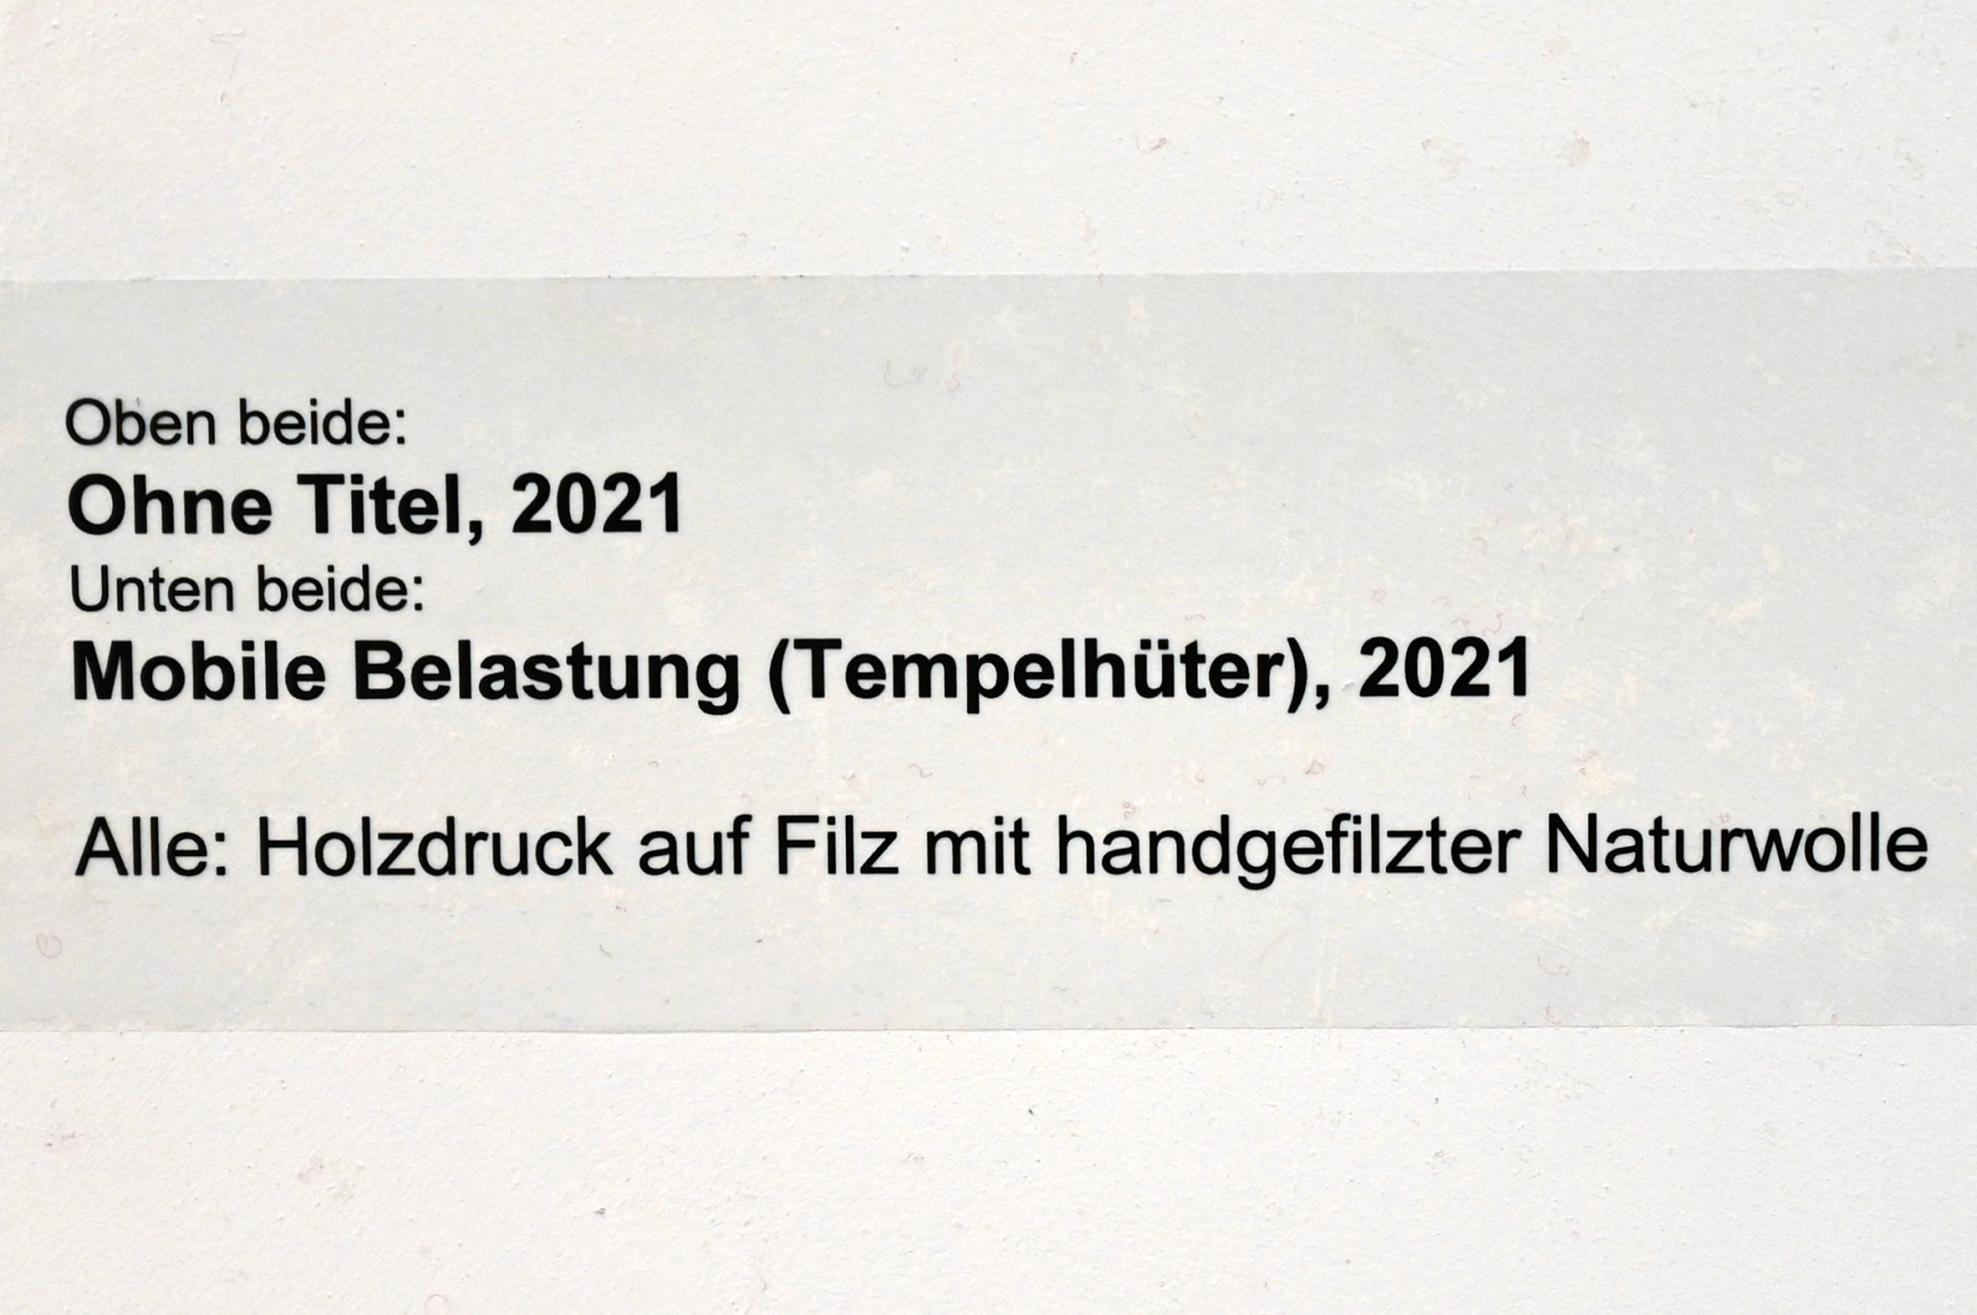 Verena Issel (2021–2022), Ohne Titel, Neumarkt in der Oberpfalz, Museum Lothar Fischer, Ausstellung "VERENA ISSEL" vom 26.06.-09.10.2022, Raum 2, 2021, Bild 2/2